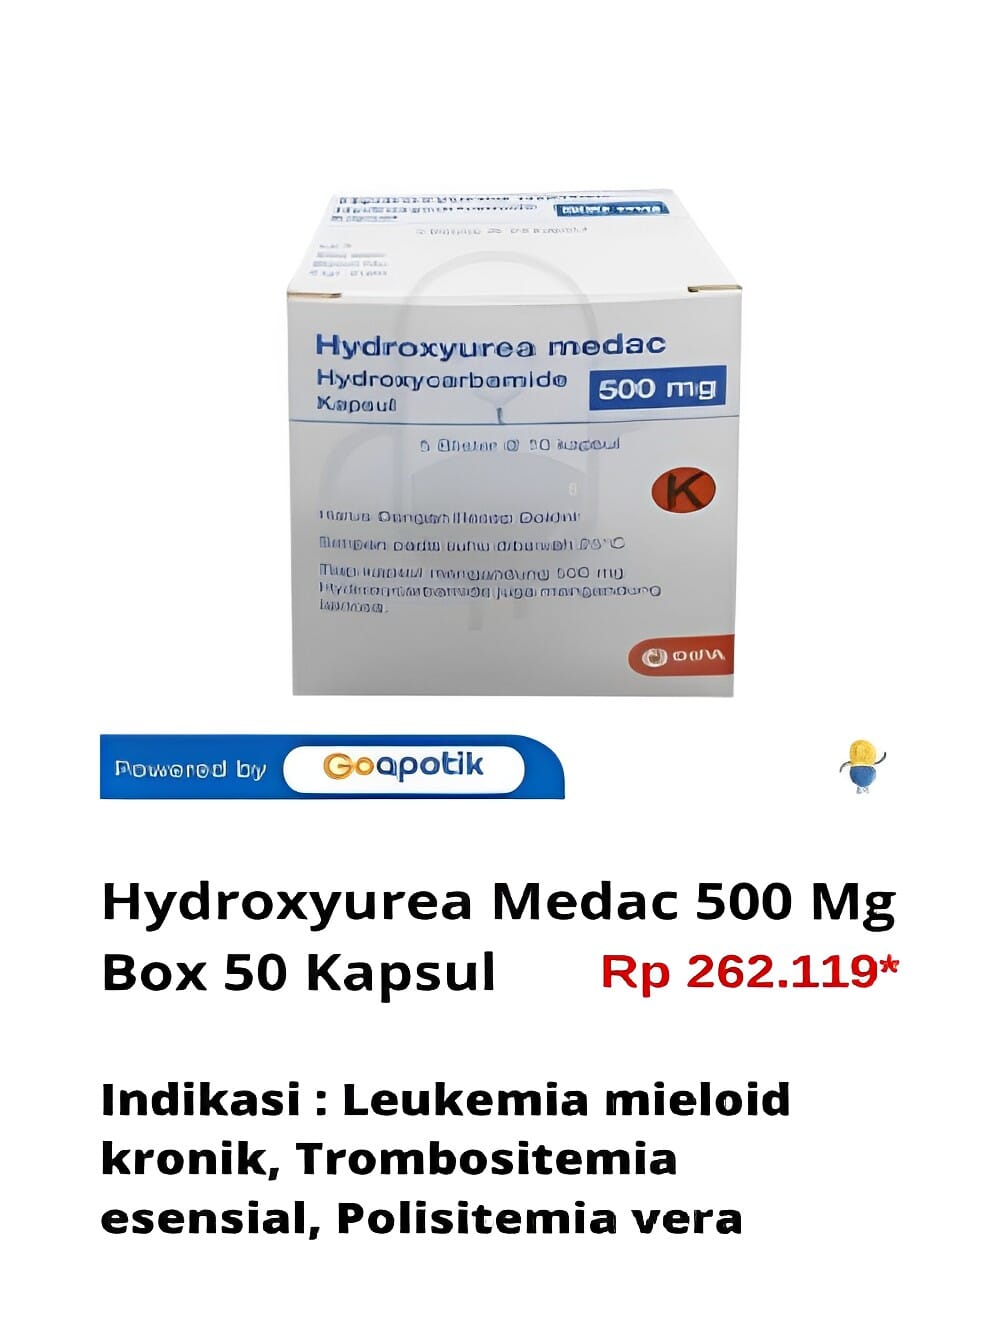 Gambar Hydroxyurea Medac 500 Mg Box 50 Kapsul